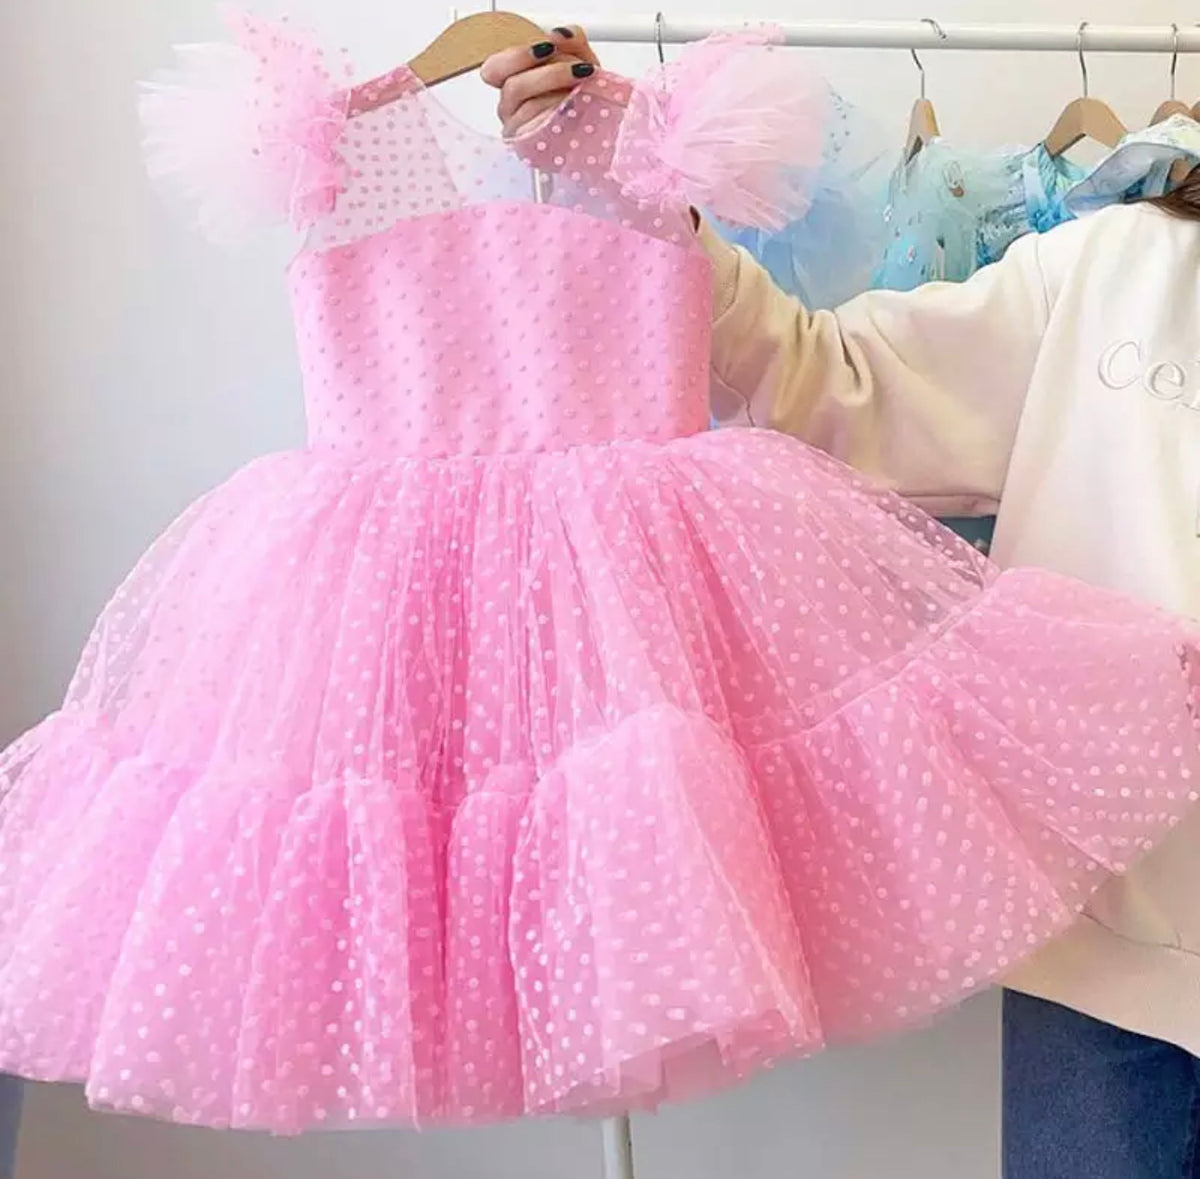 PRE-ORDER Pink Polka Dot Twirl Party Dress